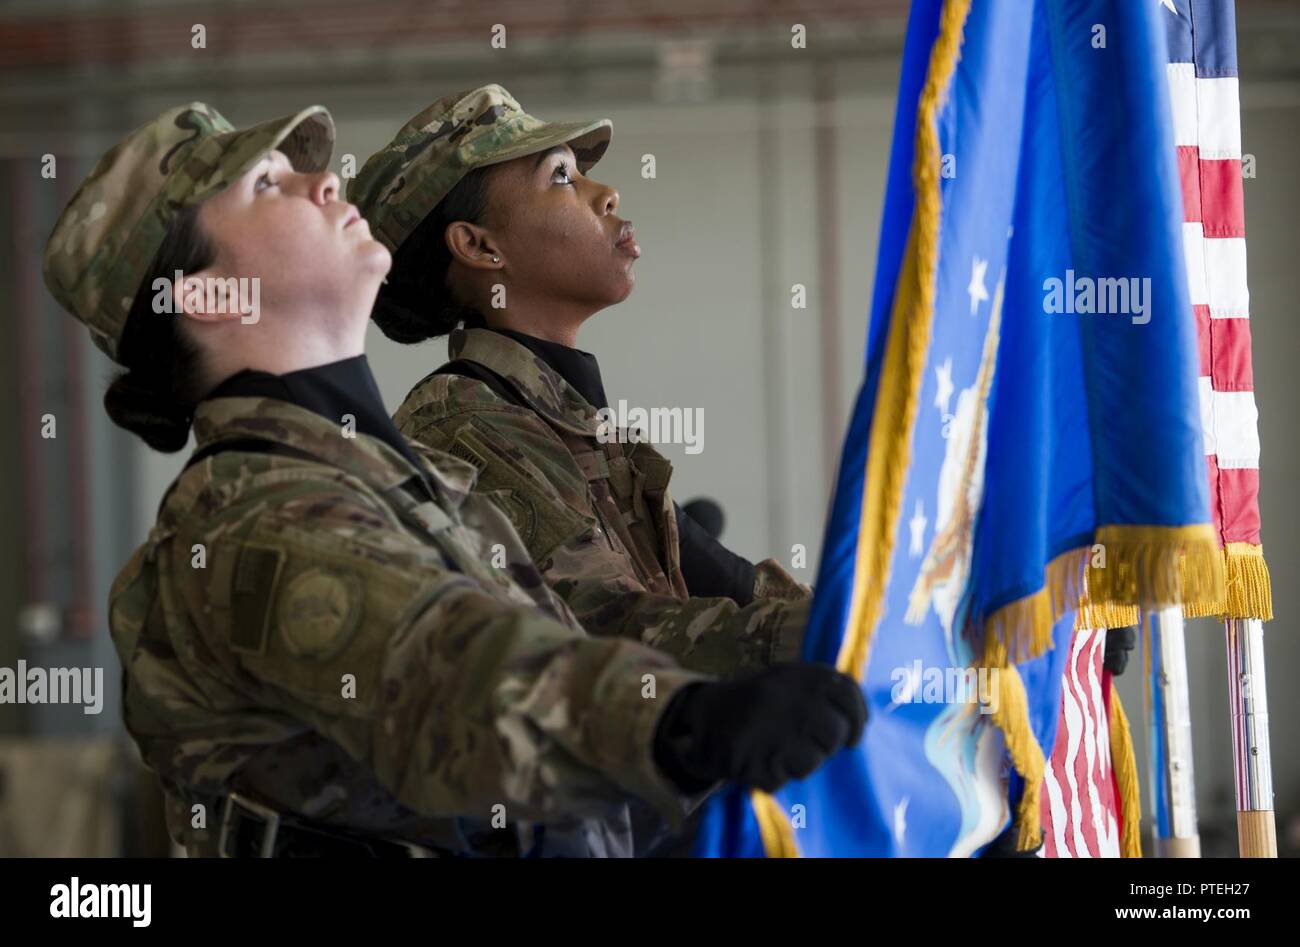 Los miembros de la Guardia de Honor de Bagram conjunto de la Fuerza Aérea de los Estados Unidos y las banderas americanas en su lugar durante la 455Expedicionaria Escuadrón de Mantenimiento de Aeronaves de cambio de mando en el aeródromo de Bagram, Afganistán, 14 de julio de 2017. Durante la ceremonia, el Teniente Coronel Robert Kongaika tomó el mando de la 455EAMXS. Foto de stock